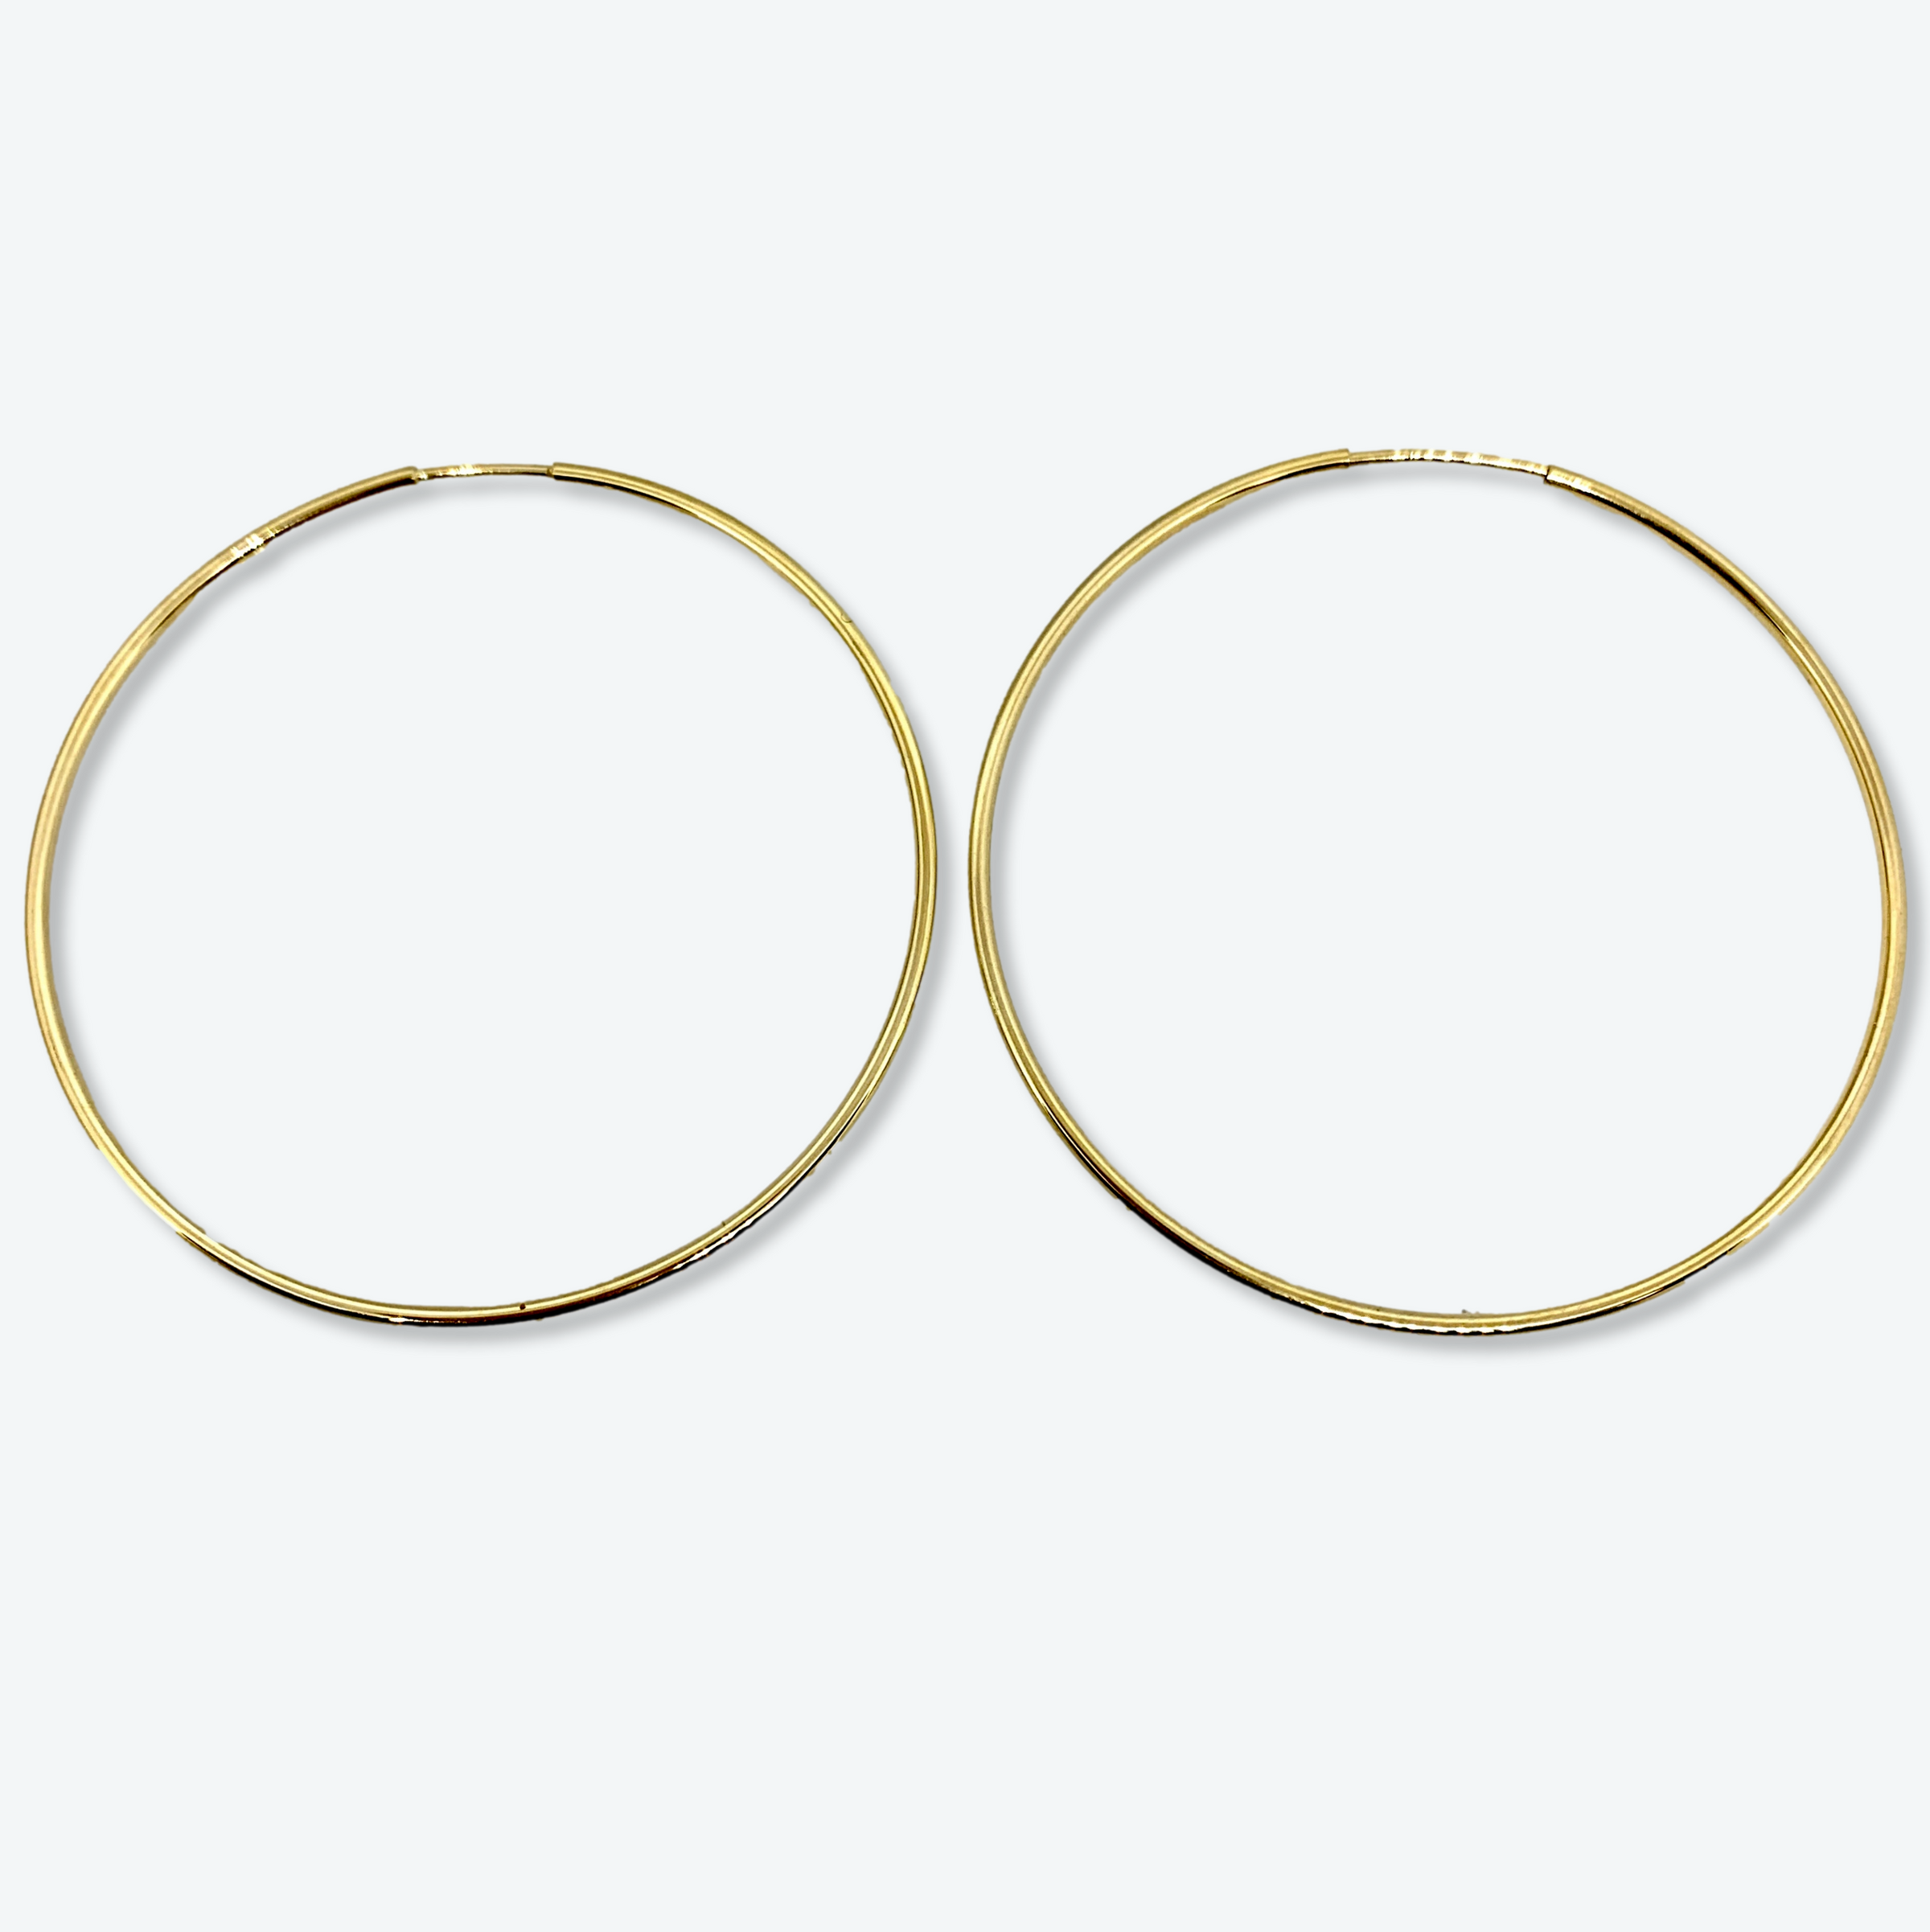 10K Yellow Gold 2.1” Endless Hoop Earrings